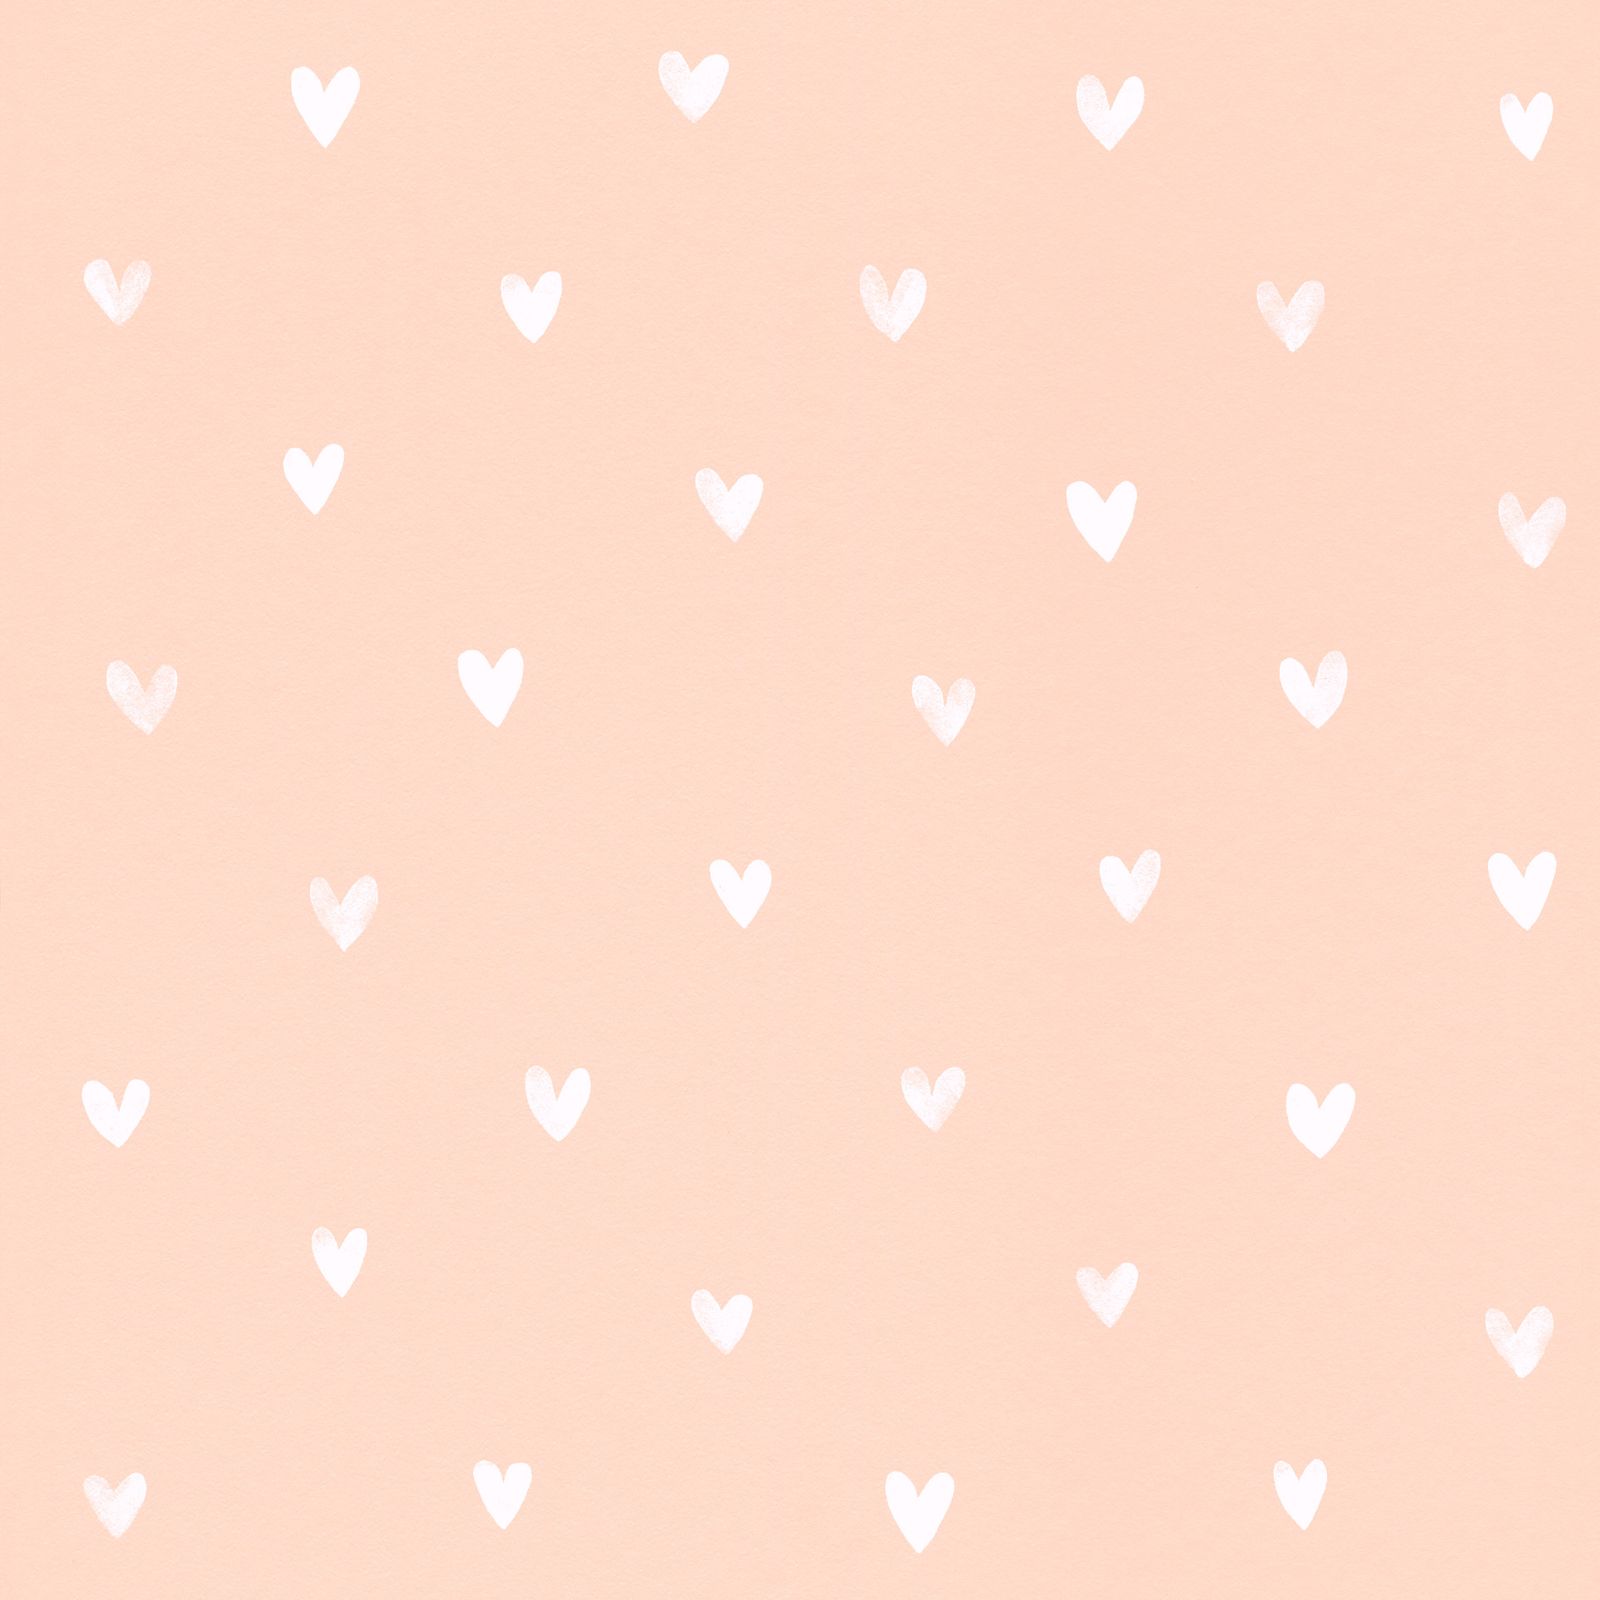 Wallpaper Rasch Textil Girls Hearts Apricot 128831 - Paper , HD Wallpaper & Backgrounds